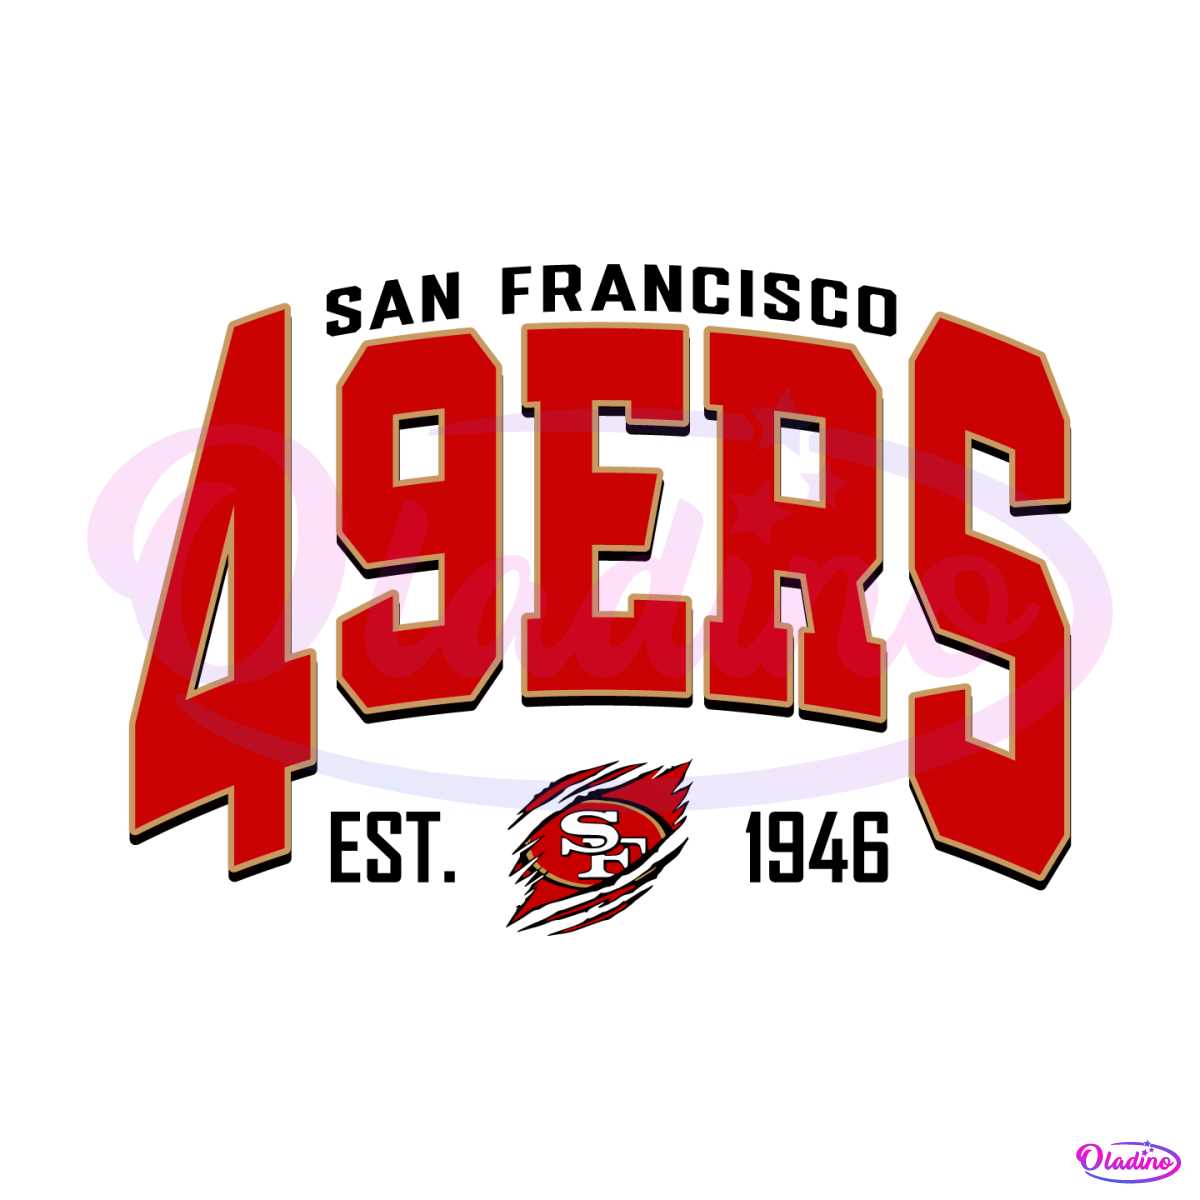 49ers logo vintage